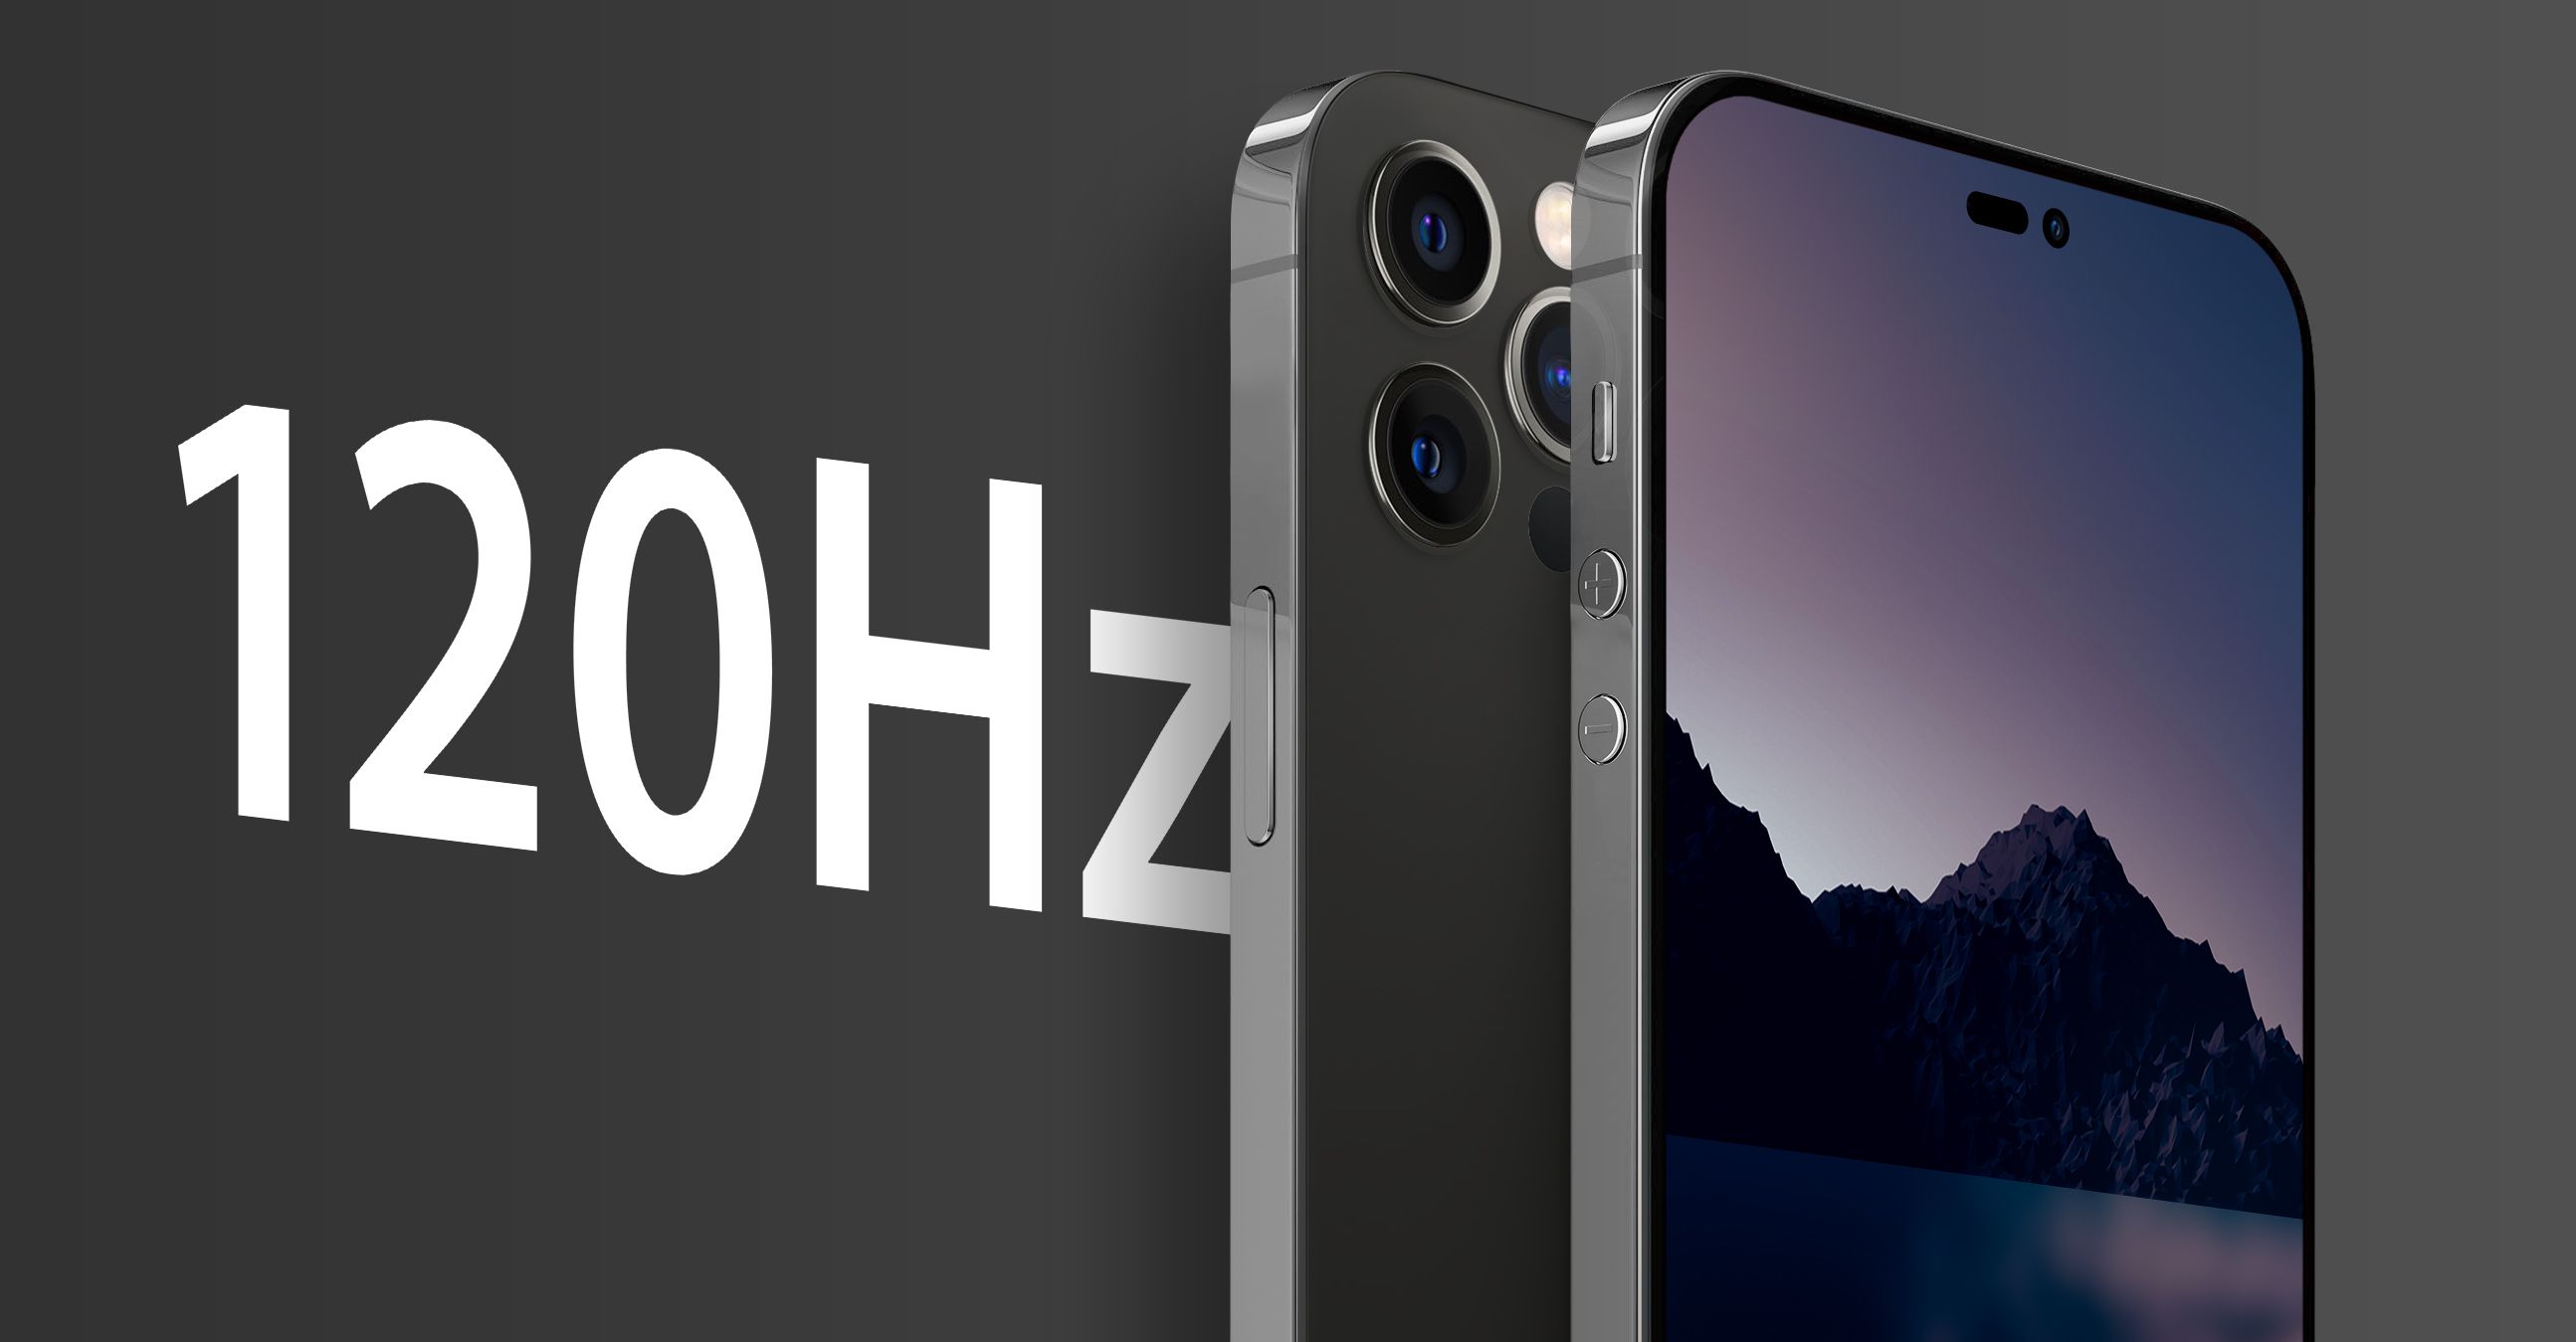 Gli analisti accreditano tutti gli smartphone iPhone 14 con display ProMotion a 120 Hz e almeno 6 GB di RAM